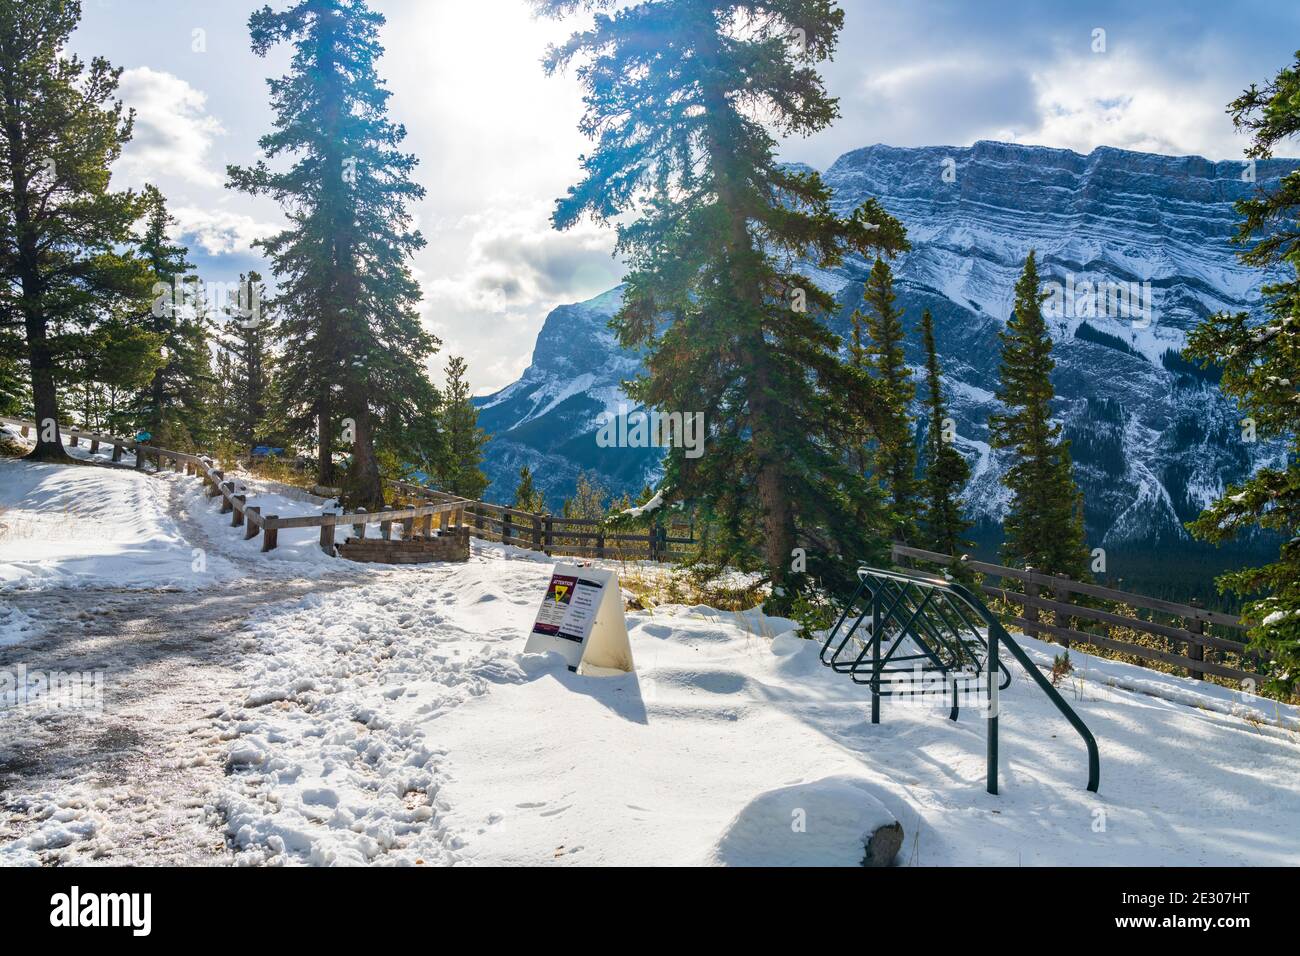 Hoodoos point de vue dans une neige automne ensoleillé jour. Parc national Banff, Rocheuses canadiennes. Banque D'Images